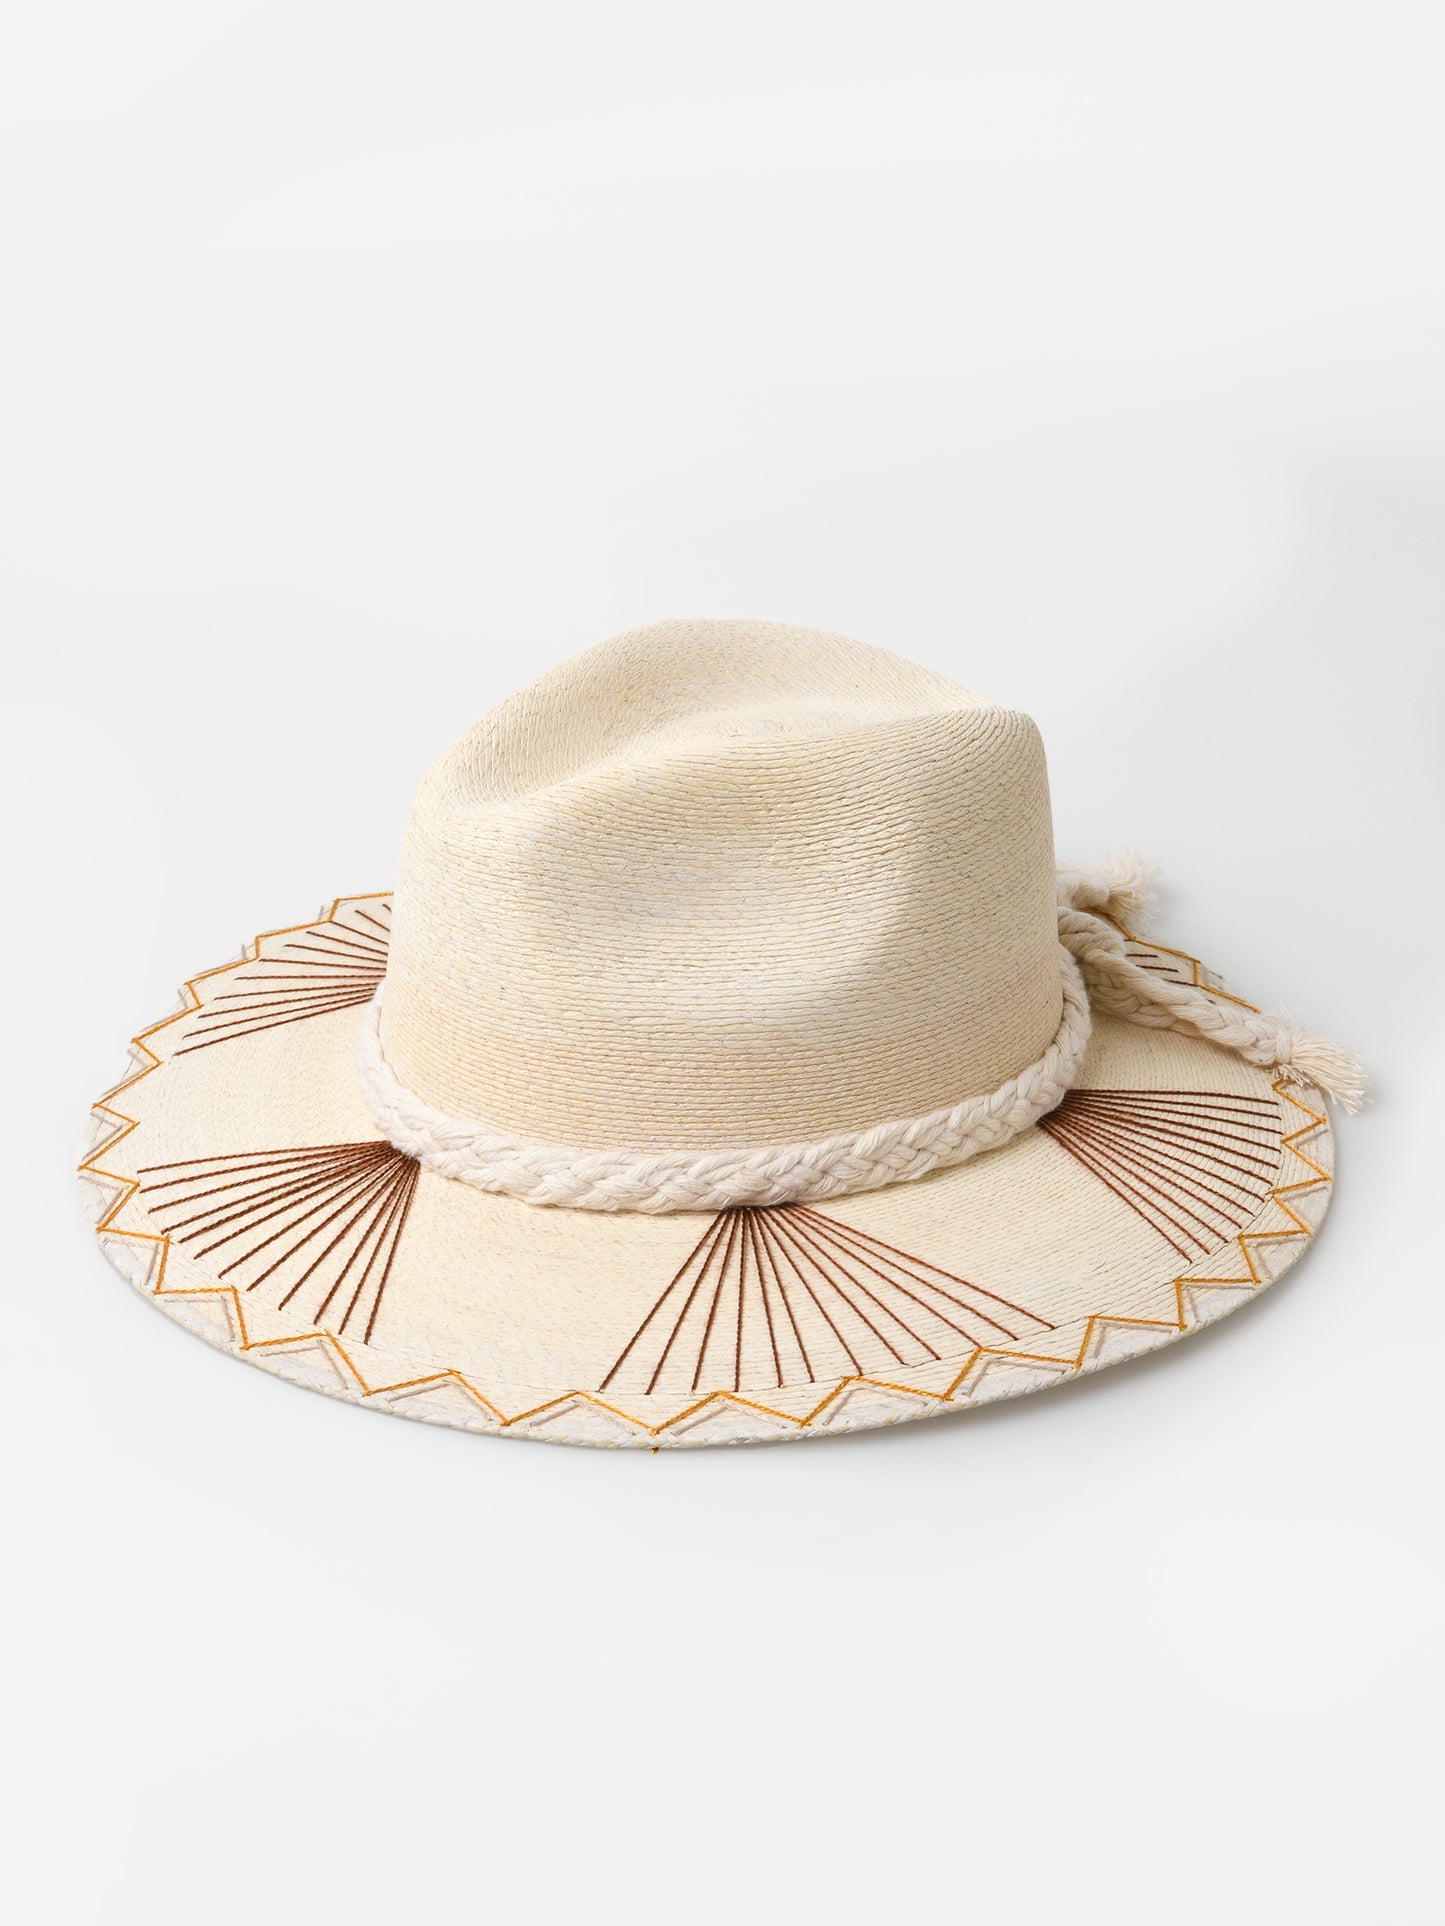 Corazon Playero Women's Sophie Hat